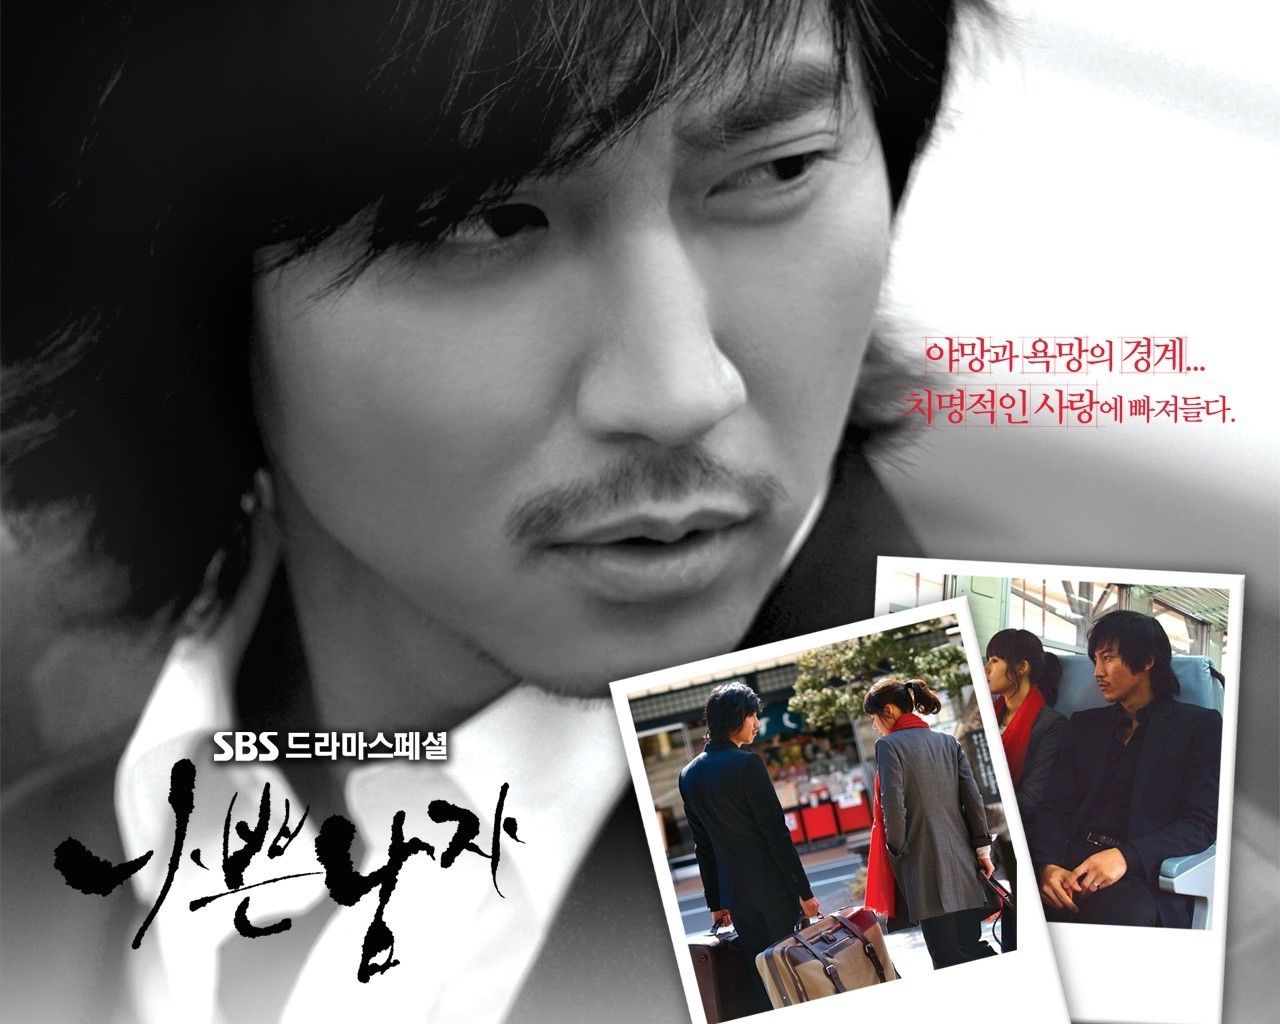 bad guy - Korean Dramas Wallpaper (21700370) - Fanpop